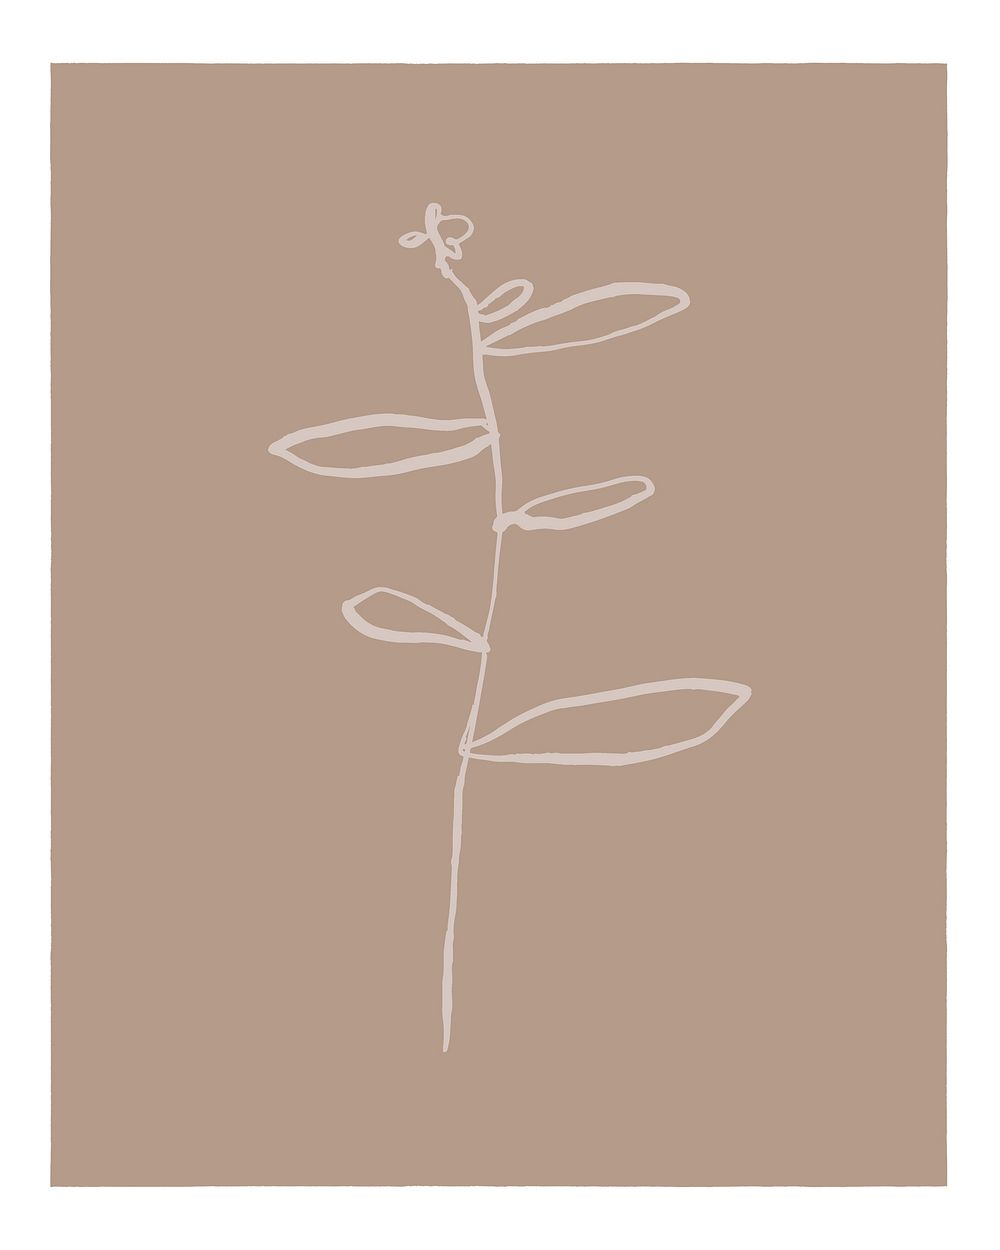 Aesthetic flower branch art print, botanical illustration